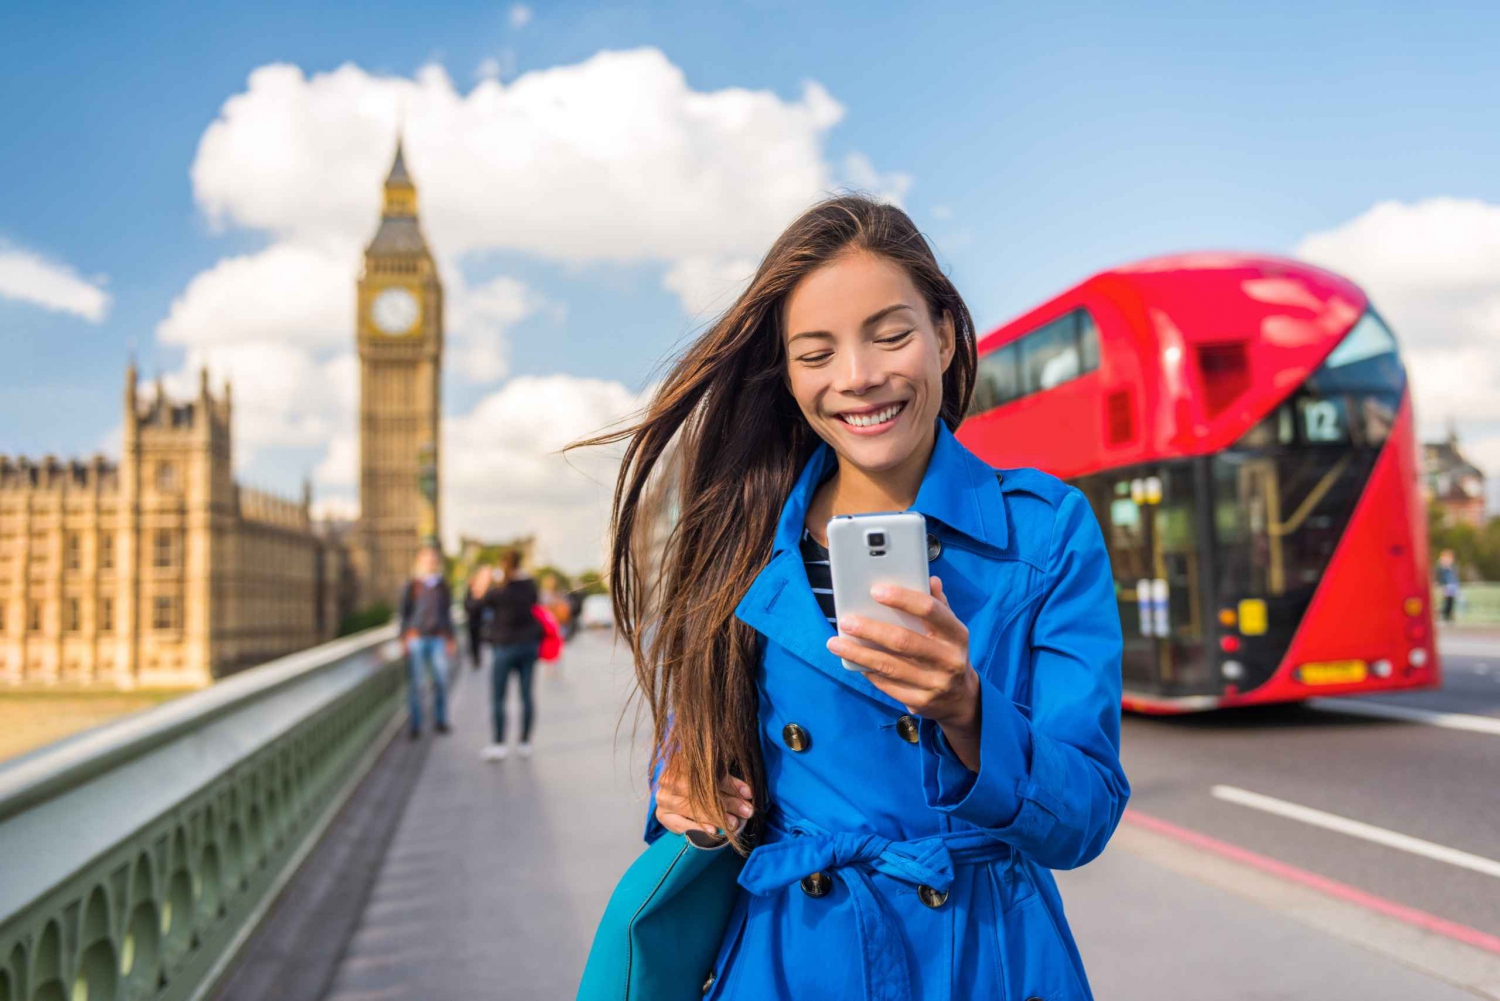 Lontoo: eSIM-mobiilidatan avulla rajoittamaton internet Yhdistyneessä kuningaskunnassa.